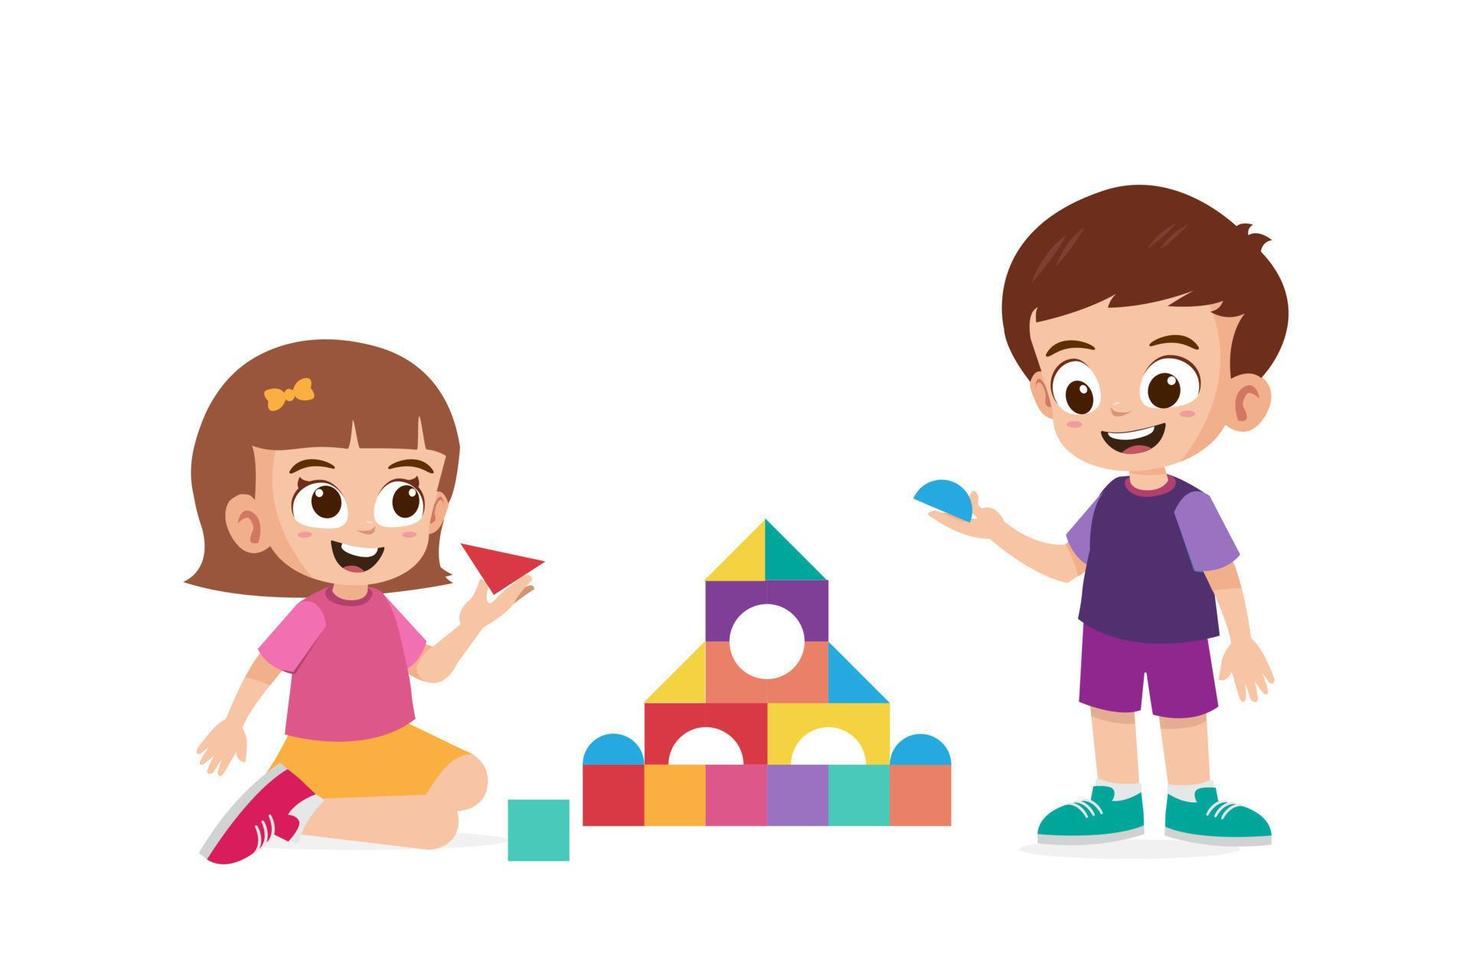 jolie petite fille et garçon jouant ensemble bloc de construction vecteur illustraiton